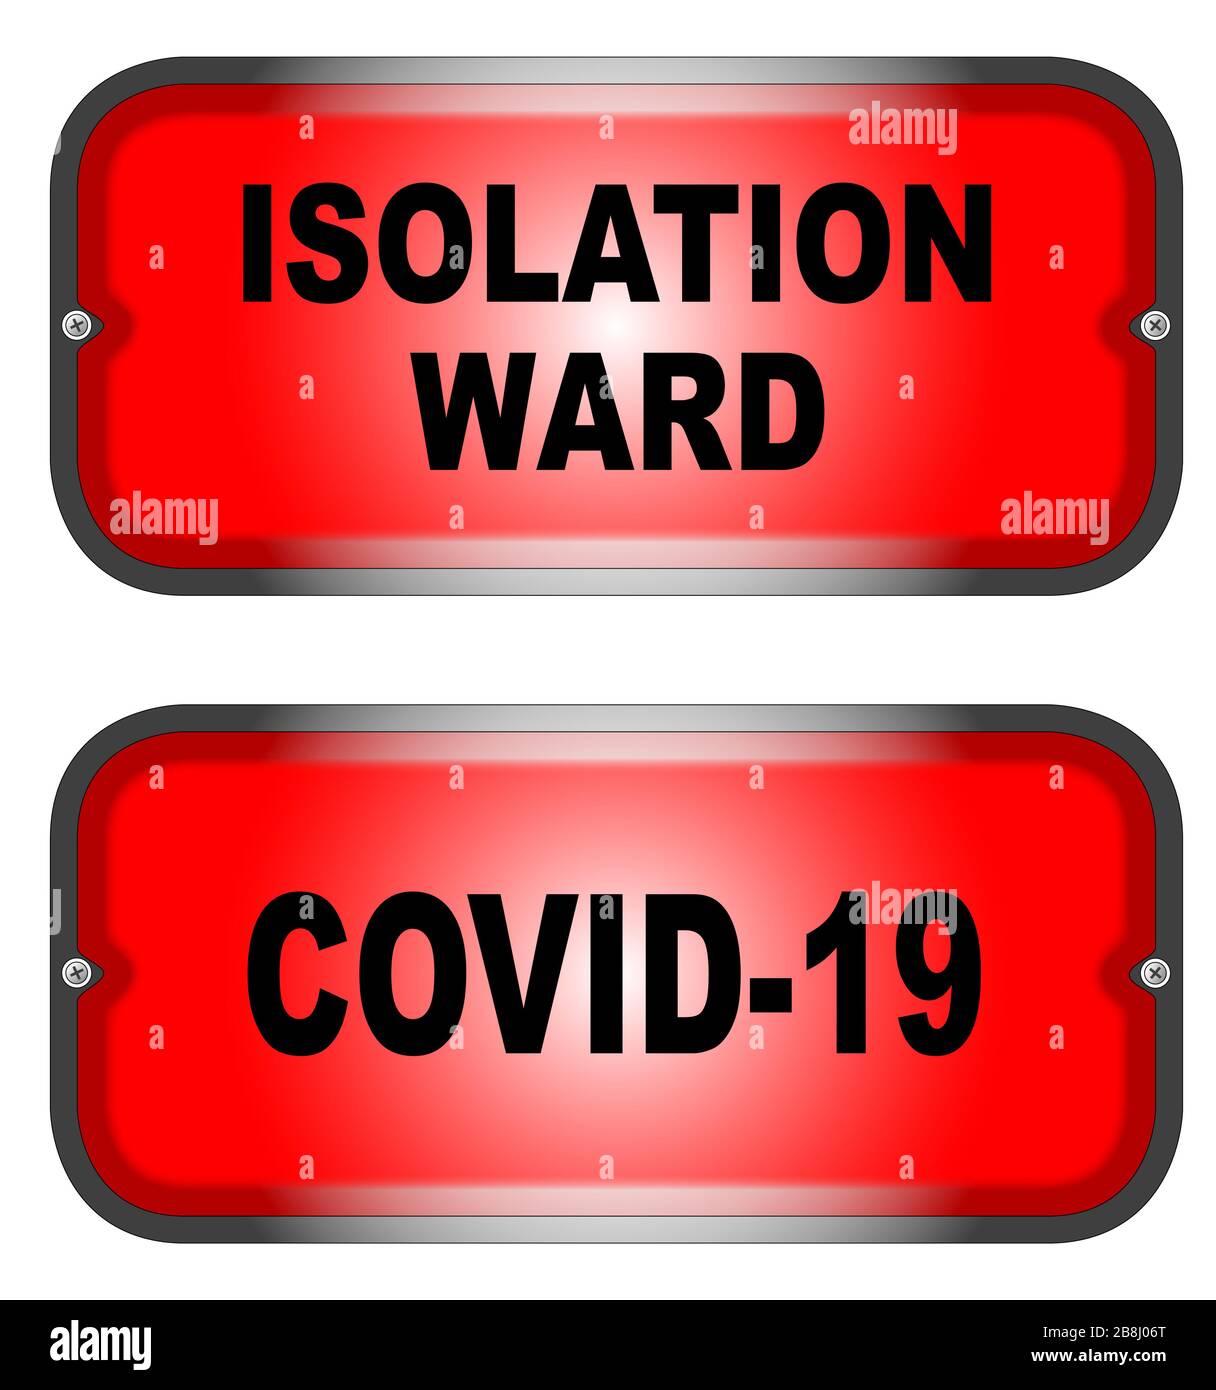 Dos luces de advertencia, una para un Covid-19 y la otra para el aislamiento Ward sobre un fondo blanco Ilustración del Vector